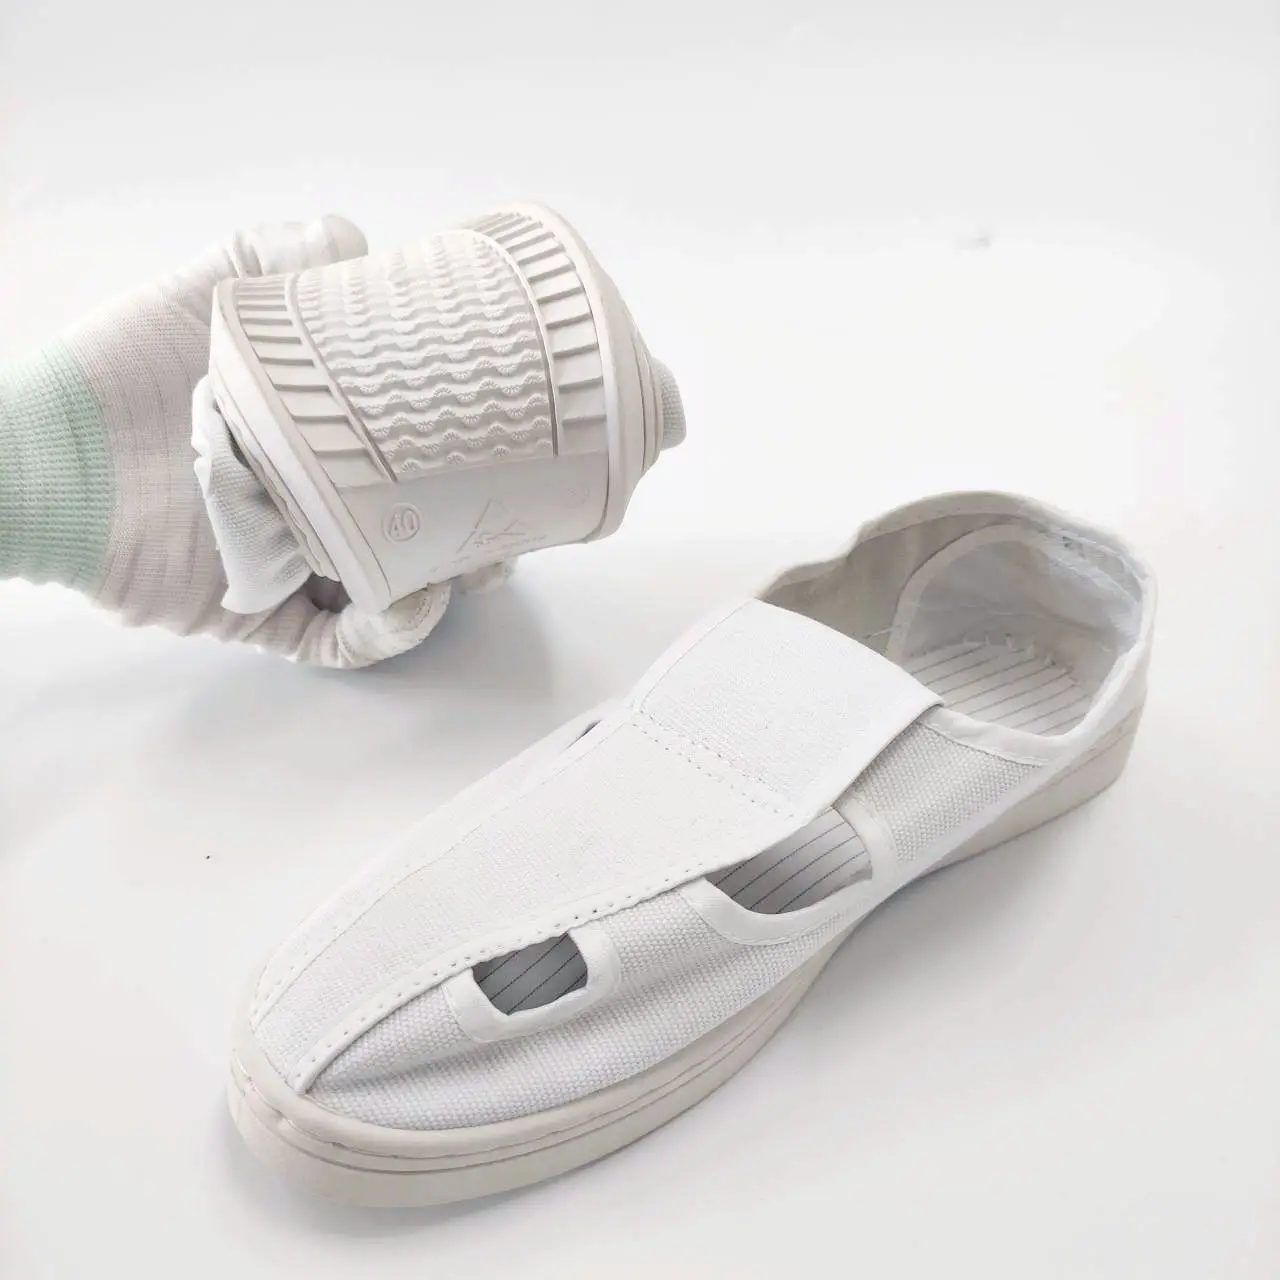 LEENOL-1577103 migliori vendite scarpe ESD lavabili per camera bianca protezione su tela scarpe antistatiche di sicurezza per donne e uomini